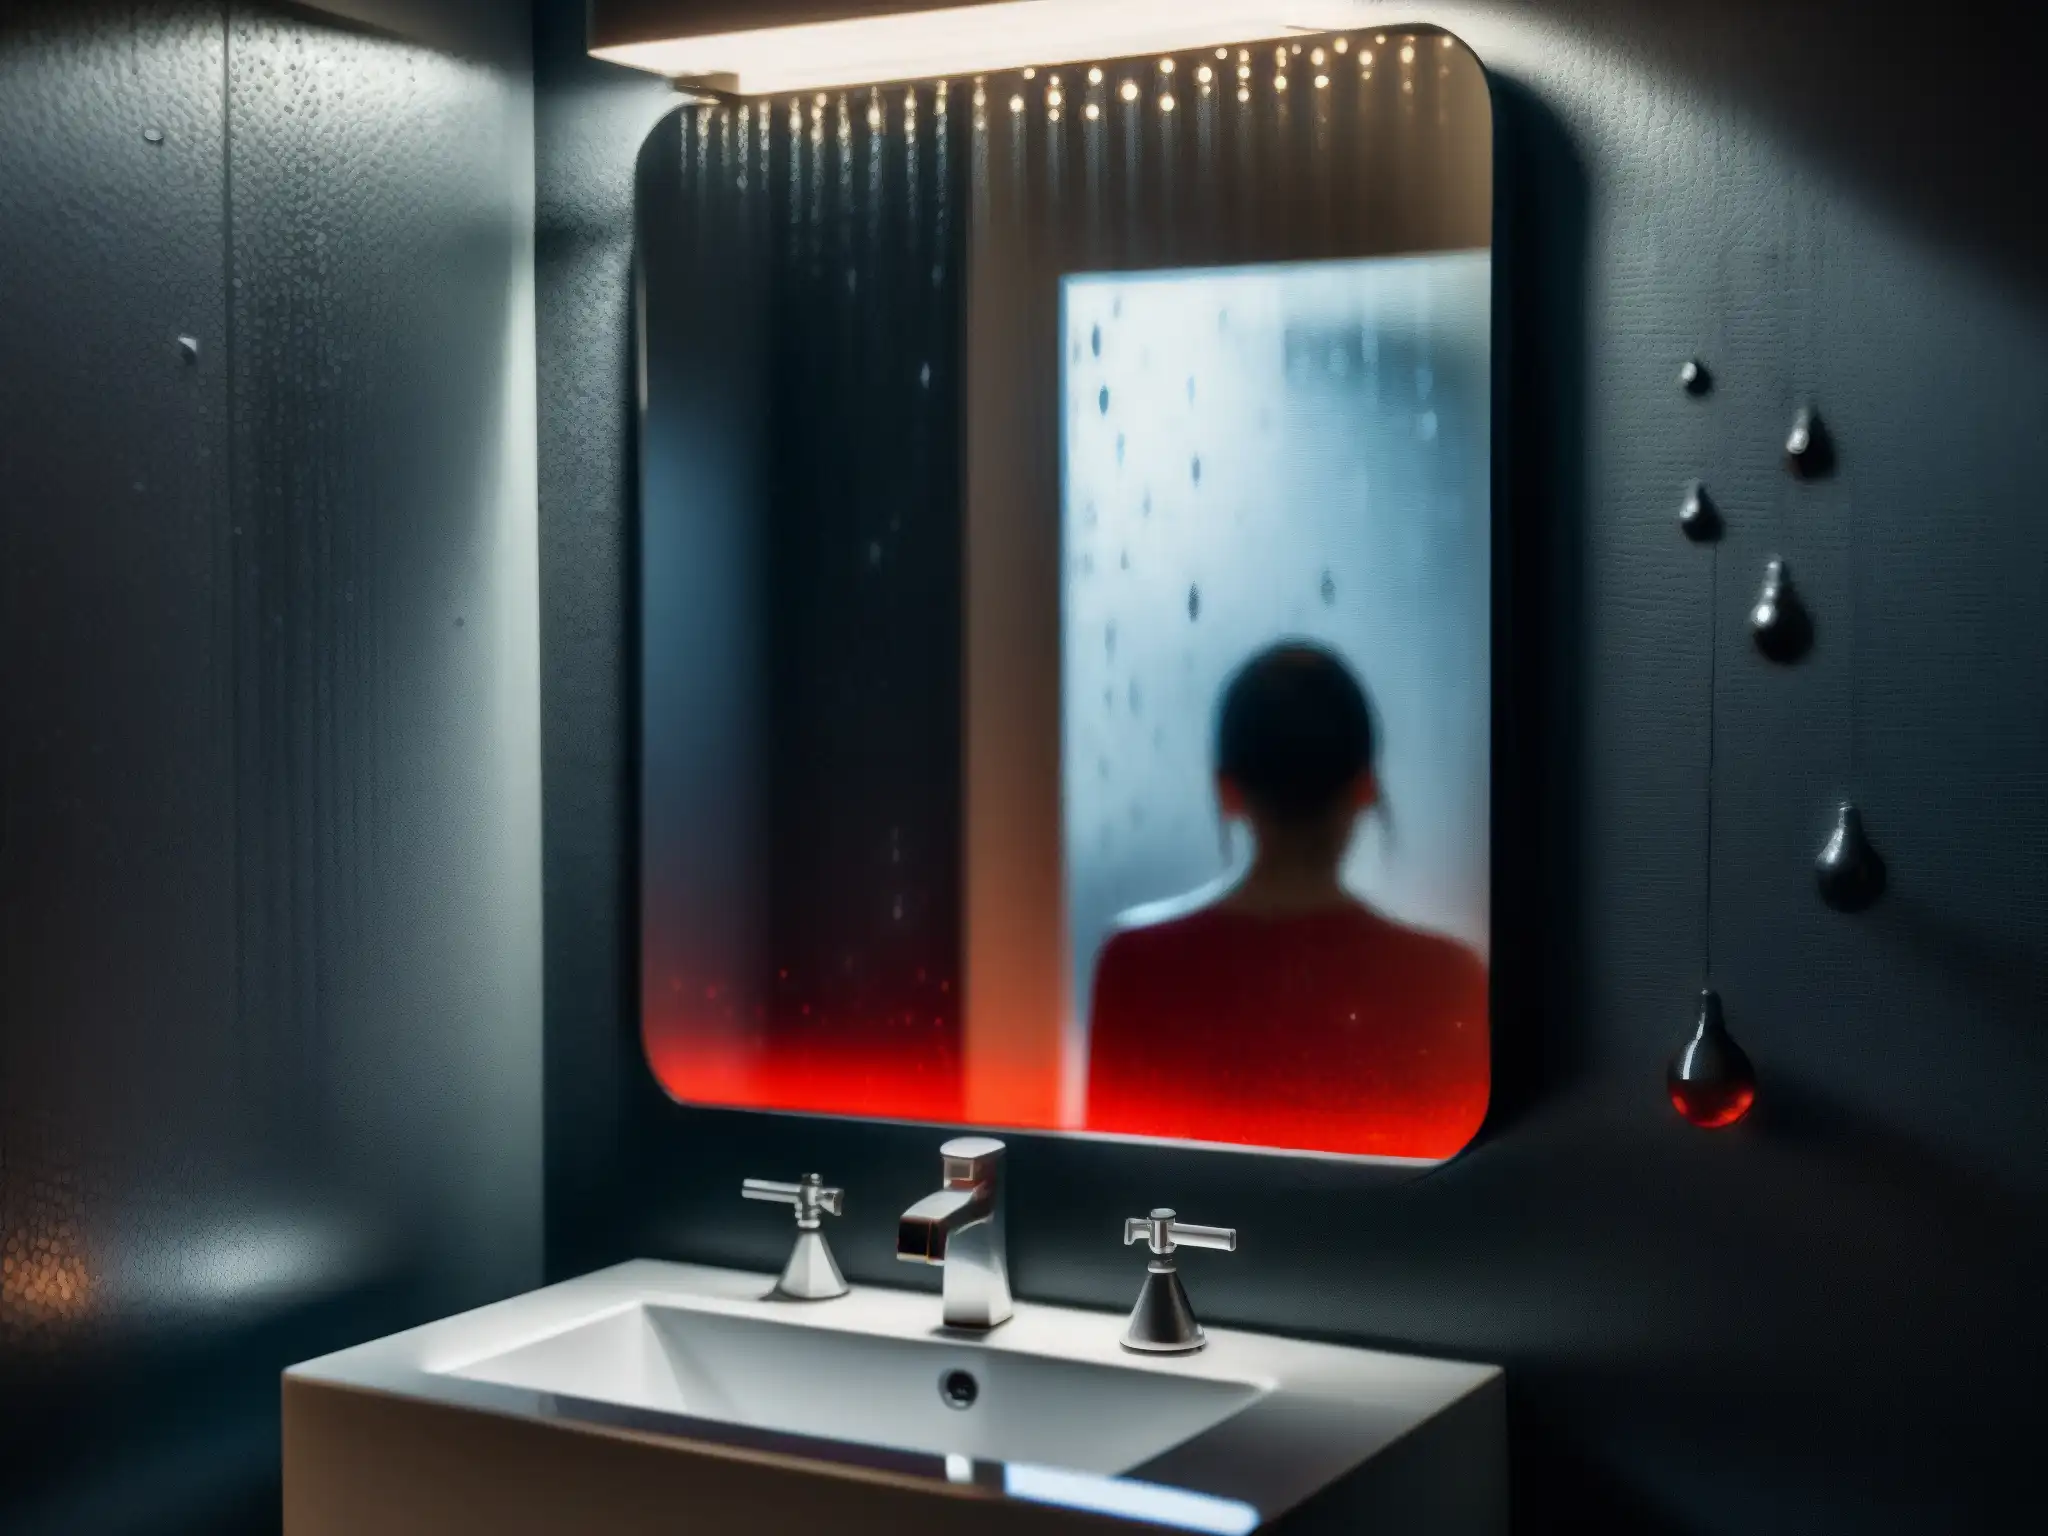 Un espejo empañado en un escalofriante baño oscuro, con gotas de agua y la figura de Bloody Mary